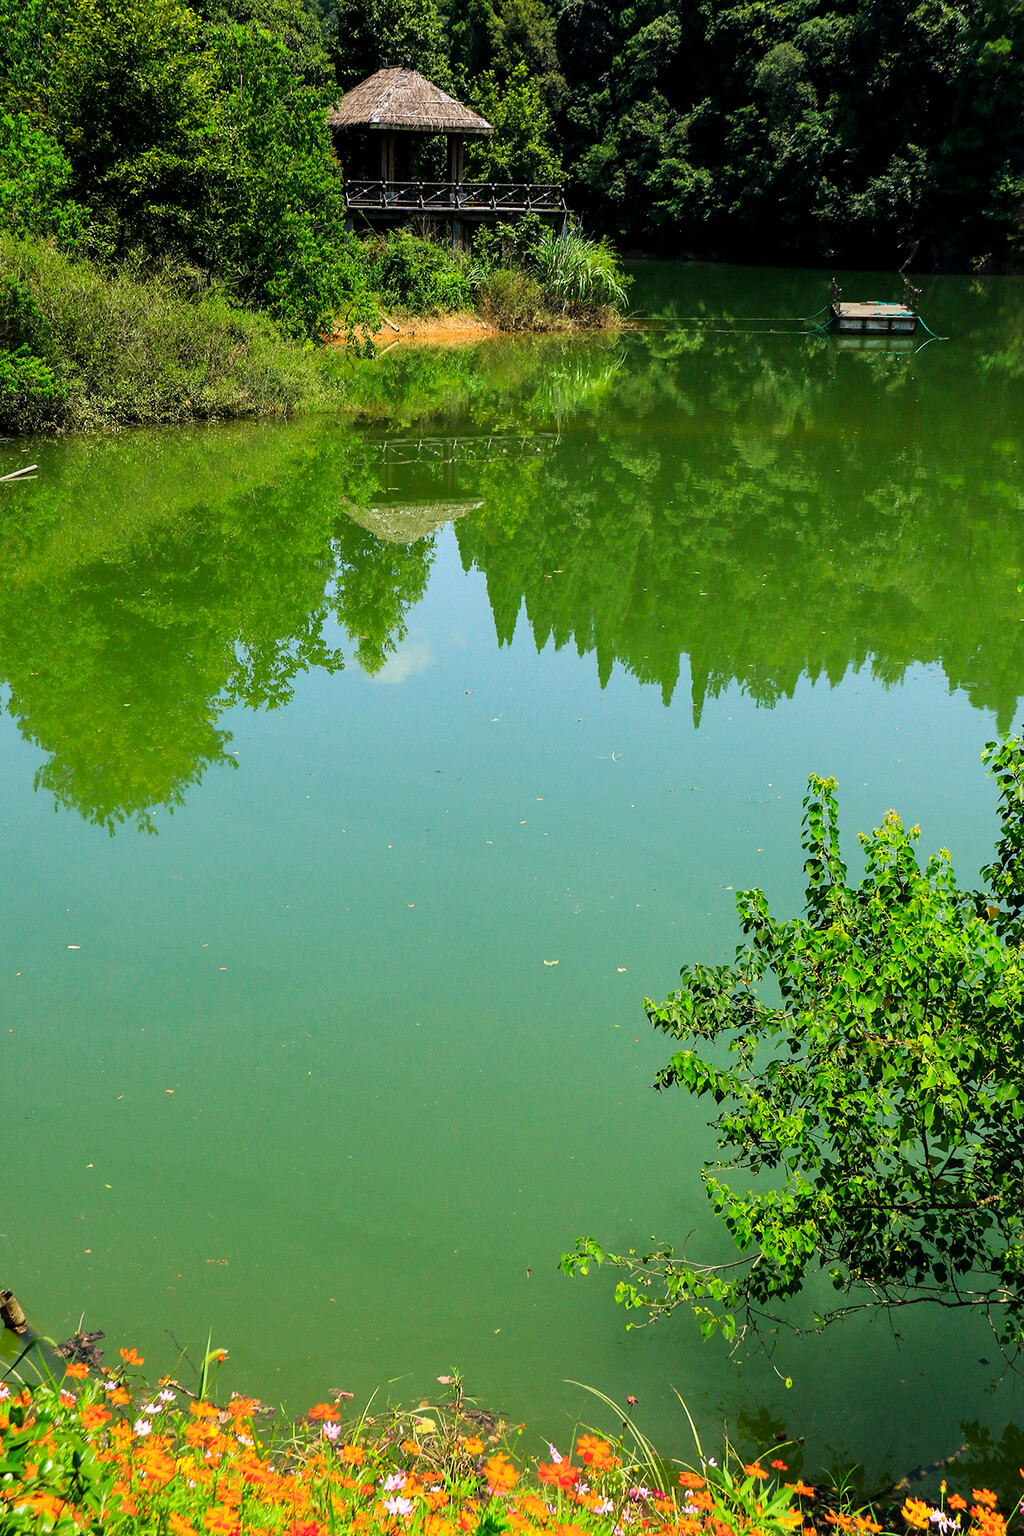 那清澈见底的湖水,那琥珀翠玉般碧绿的色彩,就像一个绿色的梦,特别的